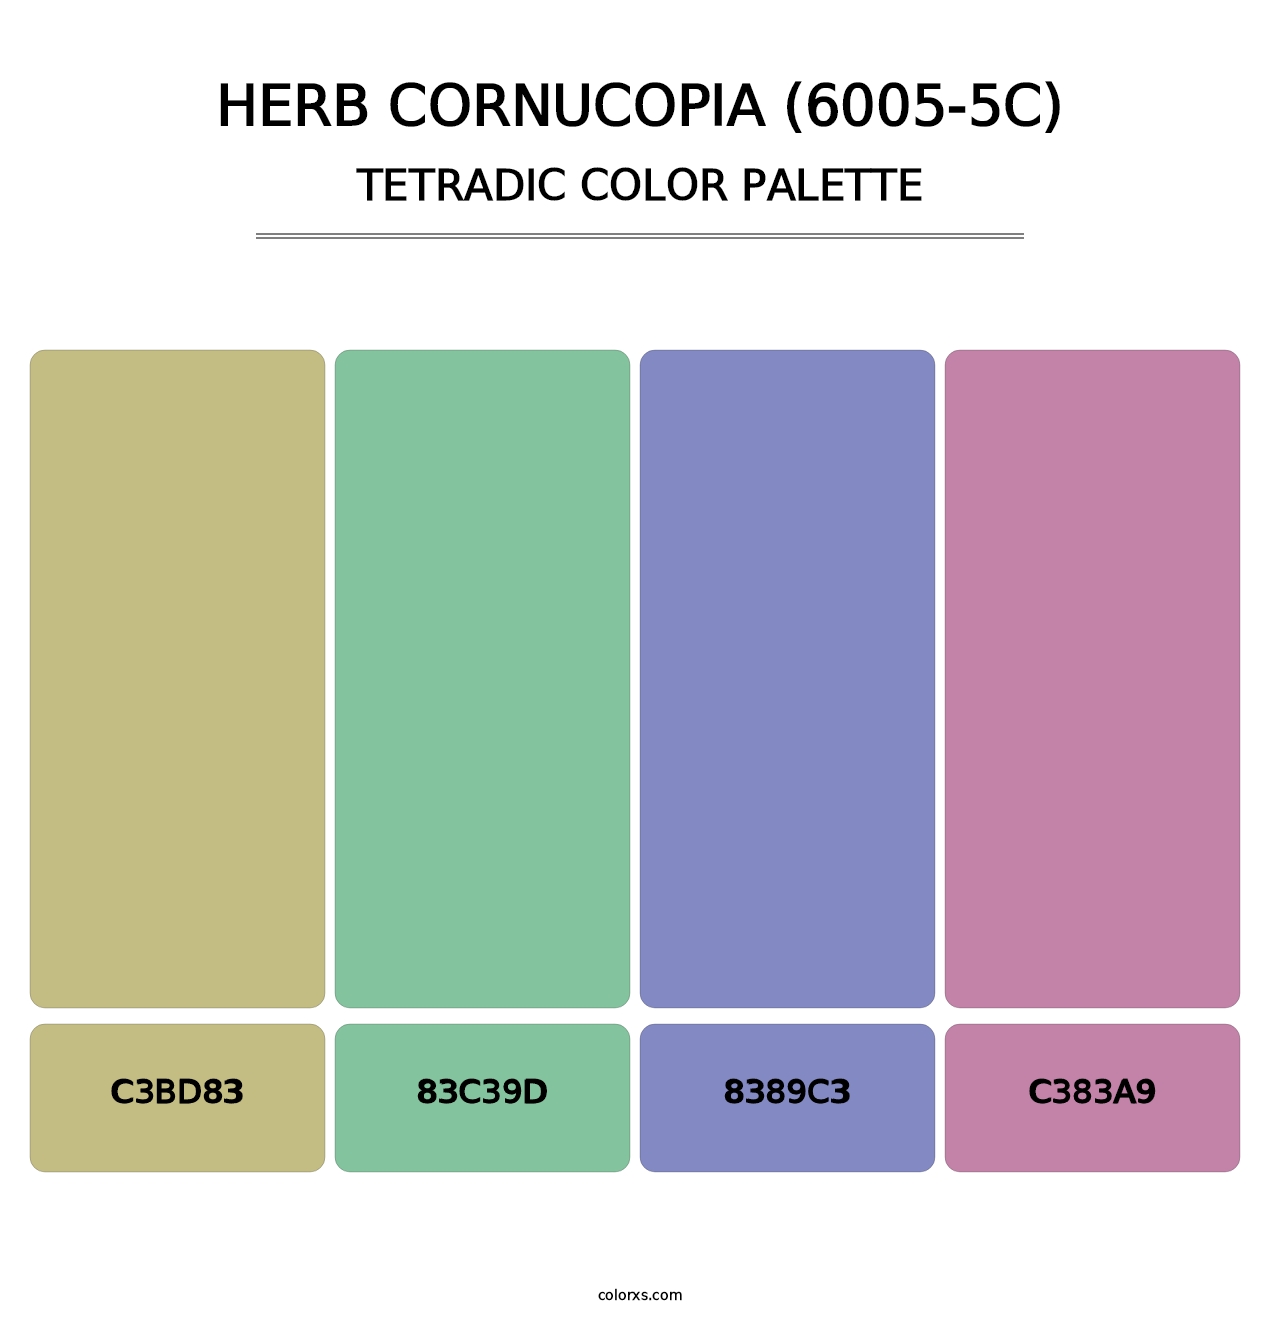 Herb Cornucopia (6005-5C) - Tetradic Color Palette